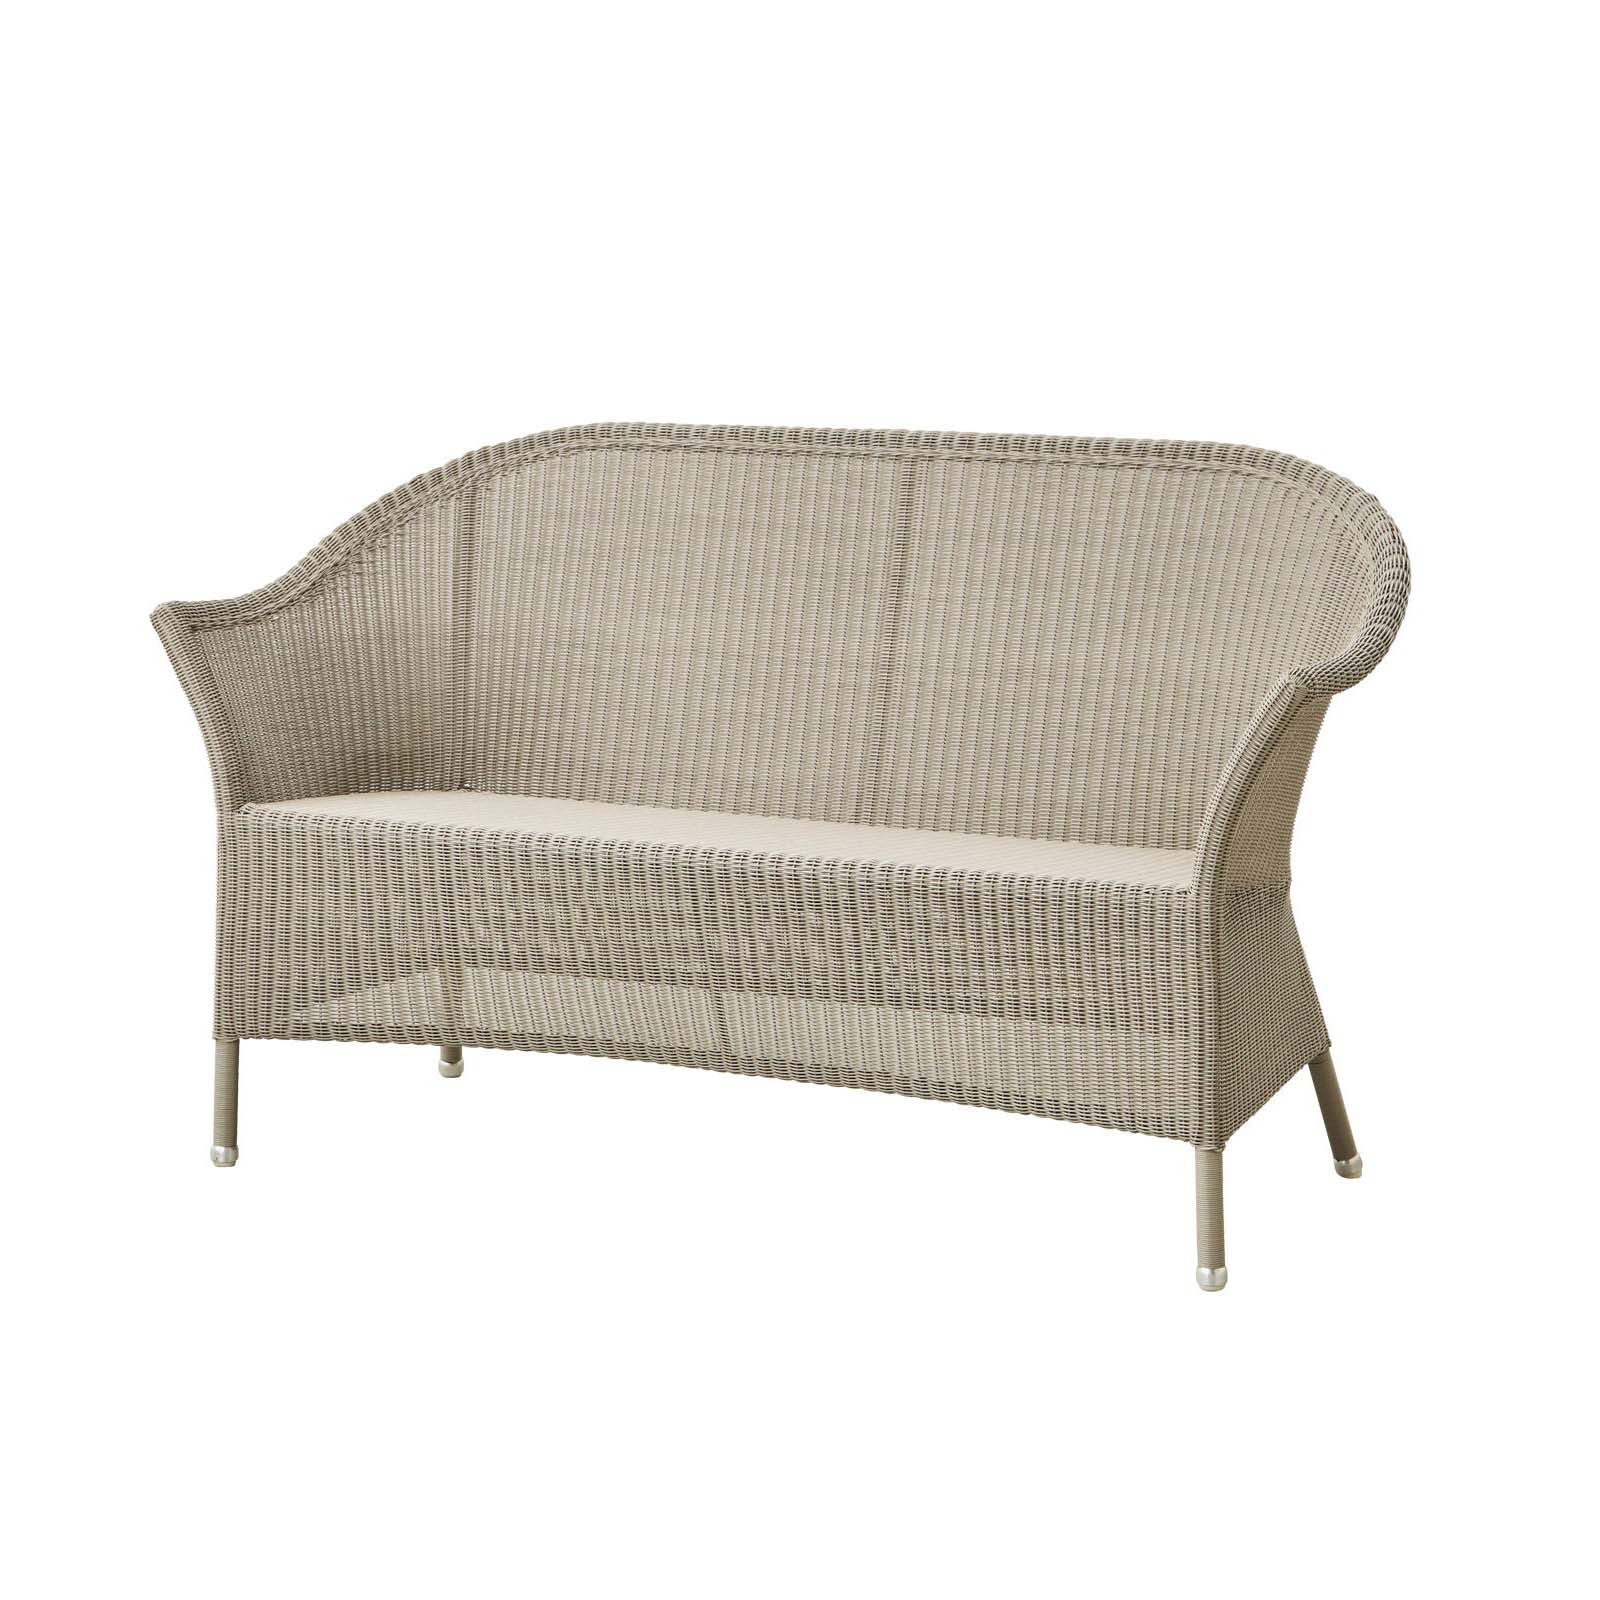 Lansing 2-Sitzer Sofa aus Cane-line Weave in Natural mit Kissen aus Cane-line Natté in Black